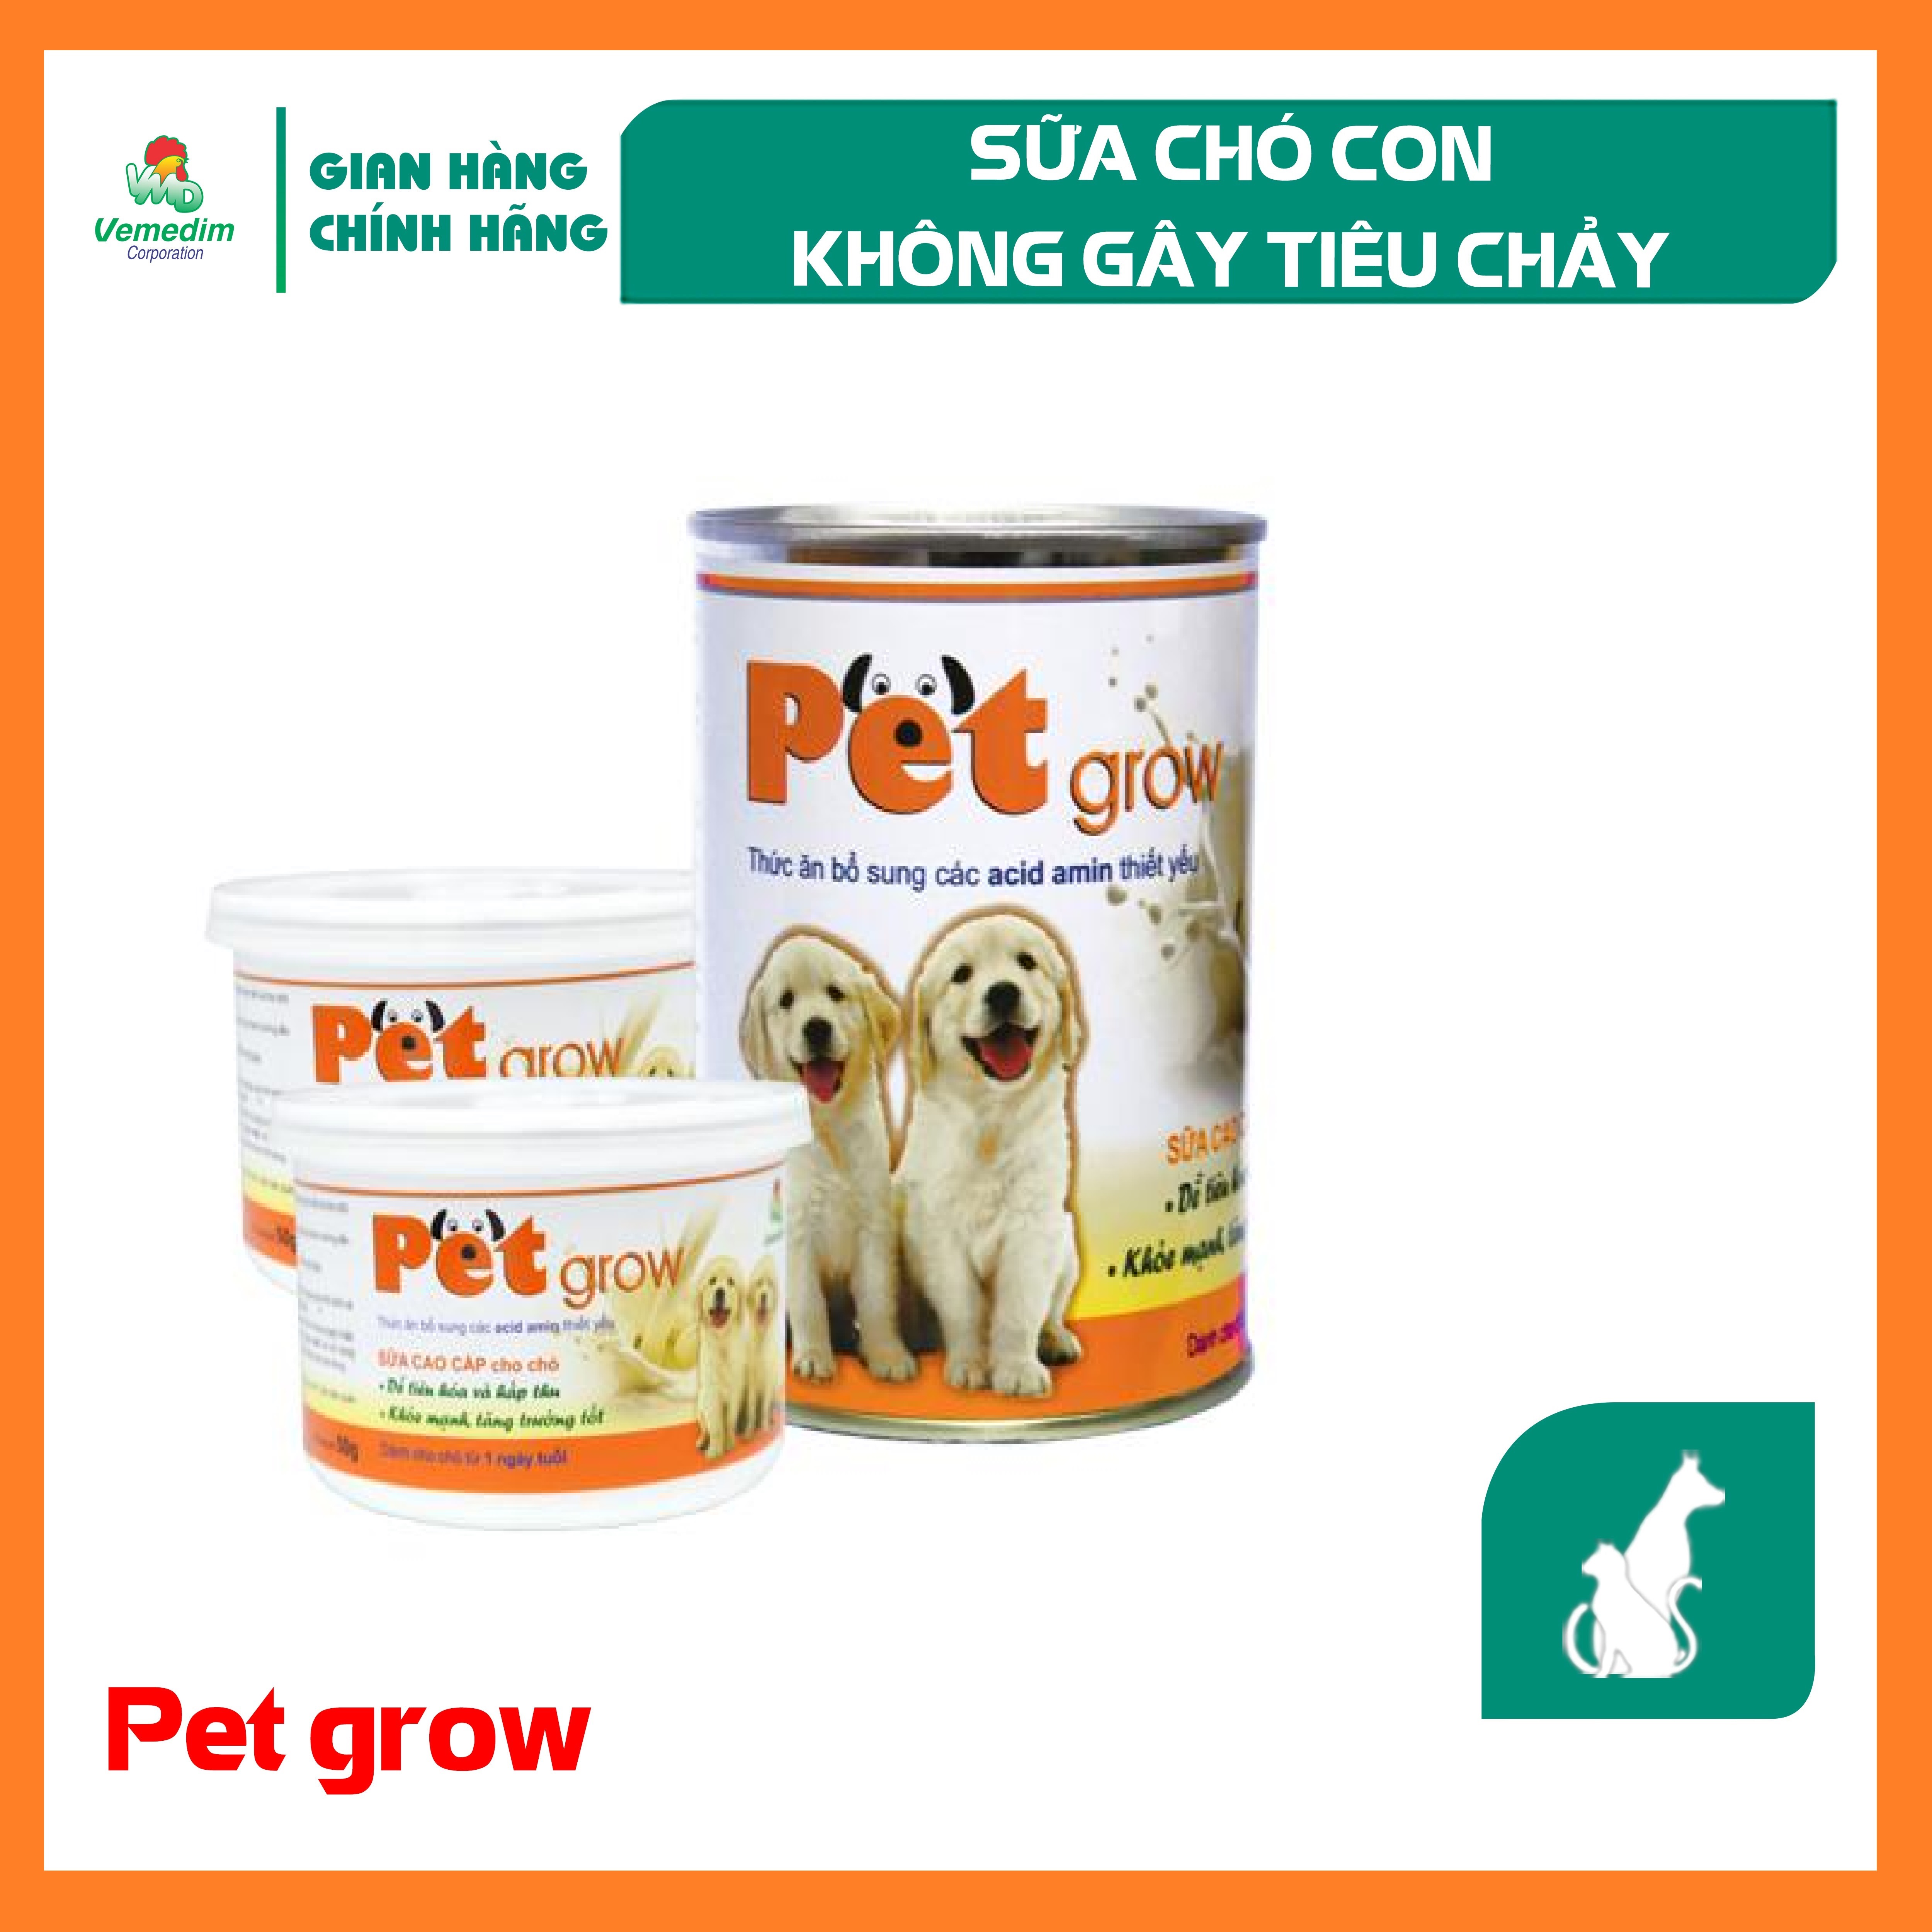 Vemedim Pet Grow sữa cho chó con không gây tiêu chảy chứa acid amin dễ